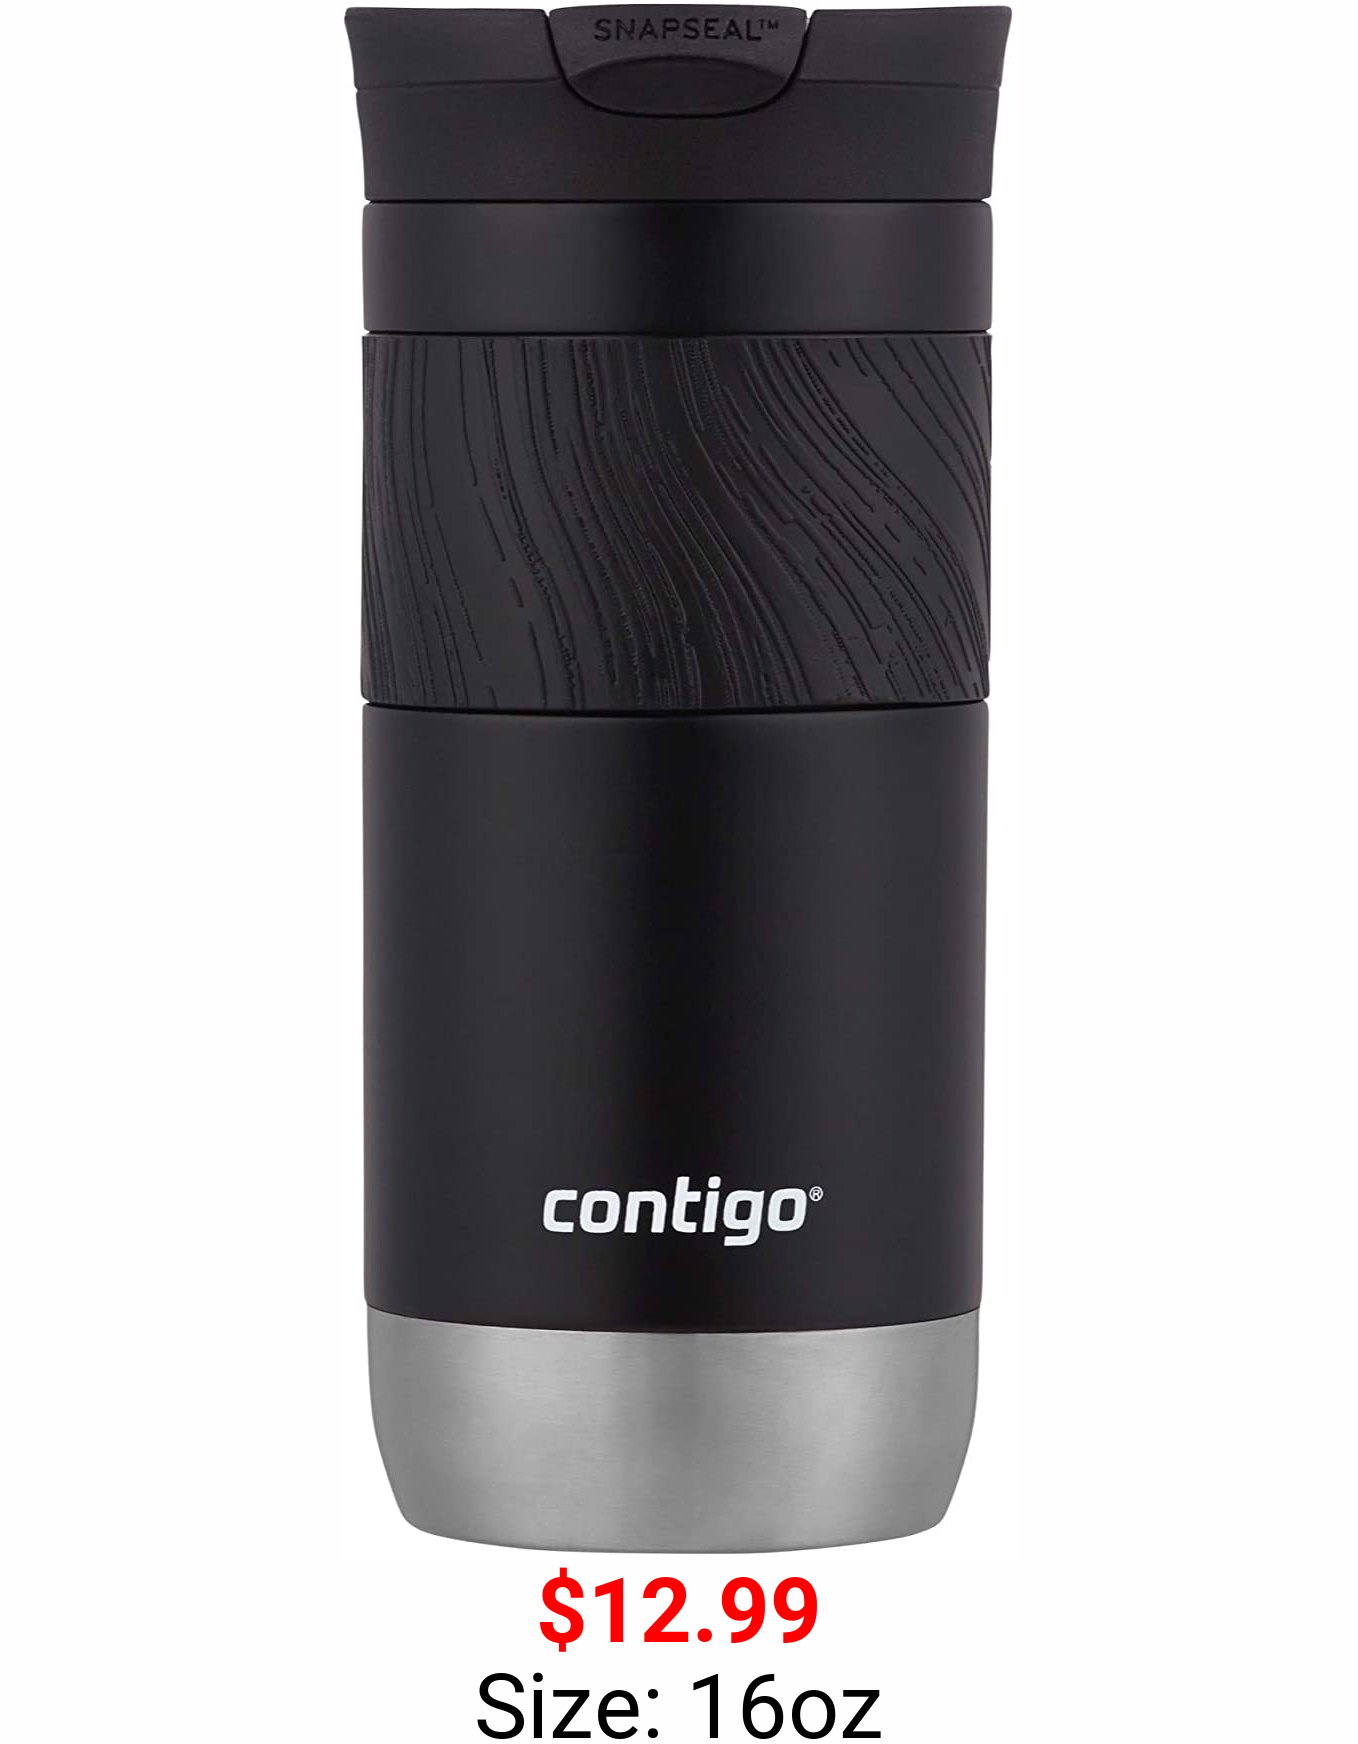 Contigo Snapseal Insulated Travel Mug, 16 oz, Licorice